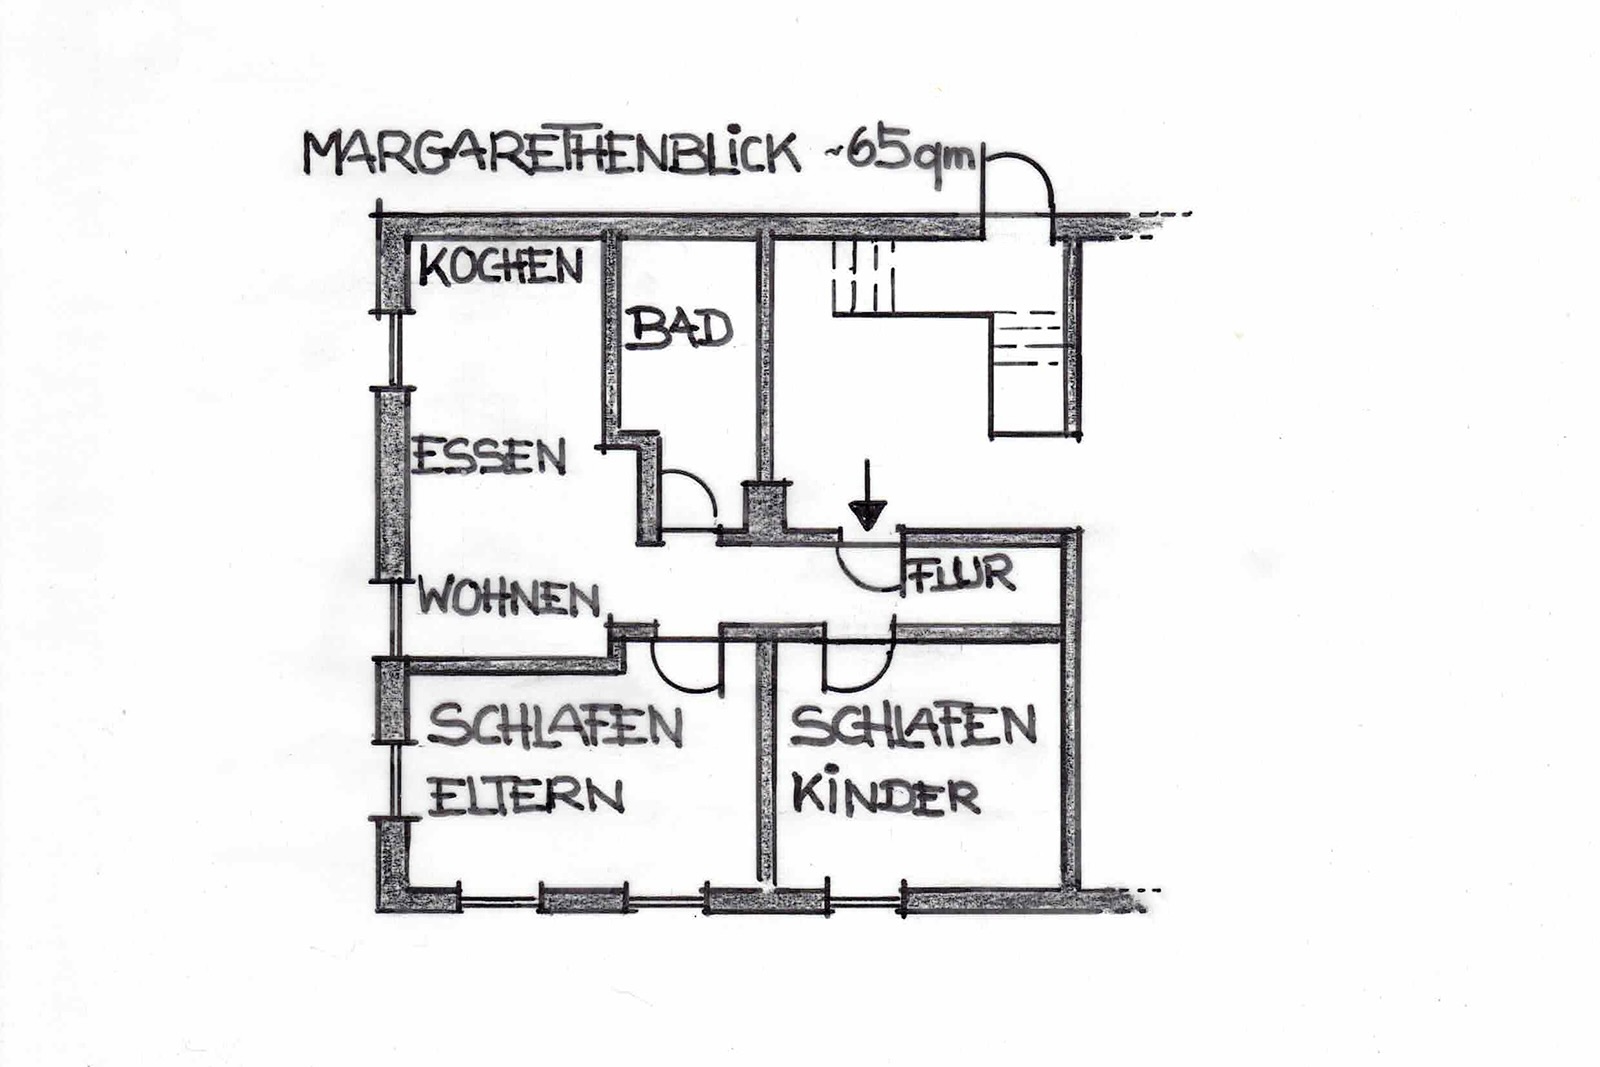 Grundriss Ferienwohnung Margarethenblick, ca. 65qm Grundfläche, 2 Schlafzimmer, Bad und offene Wohnküche mit angrenzender Sofaecke